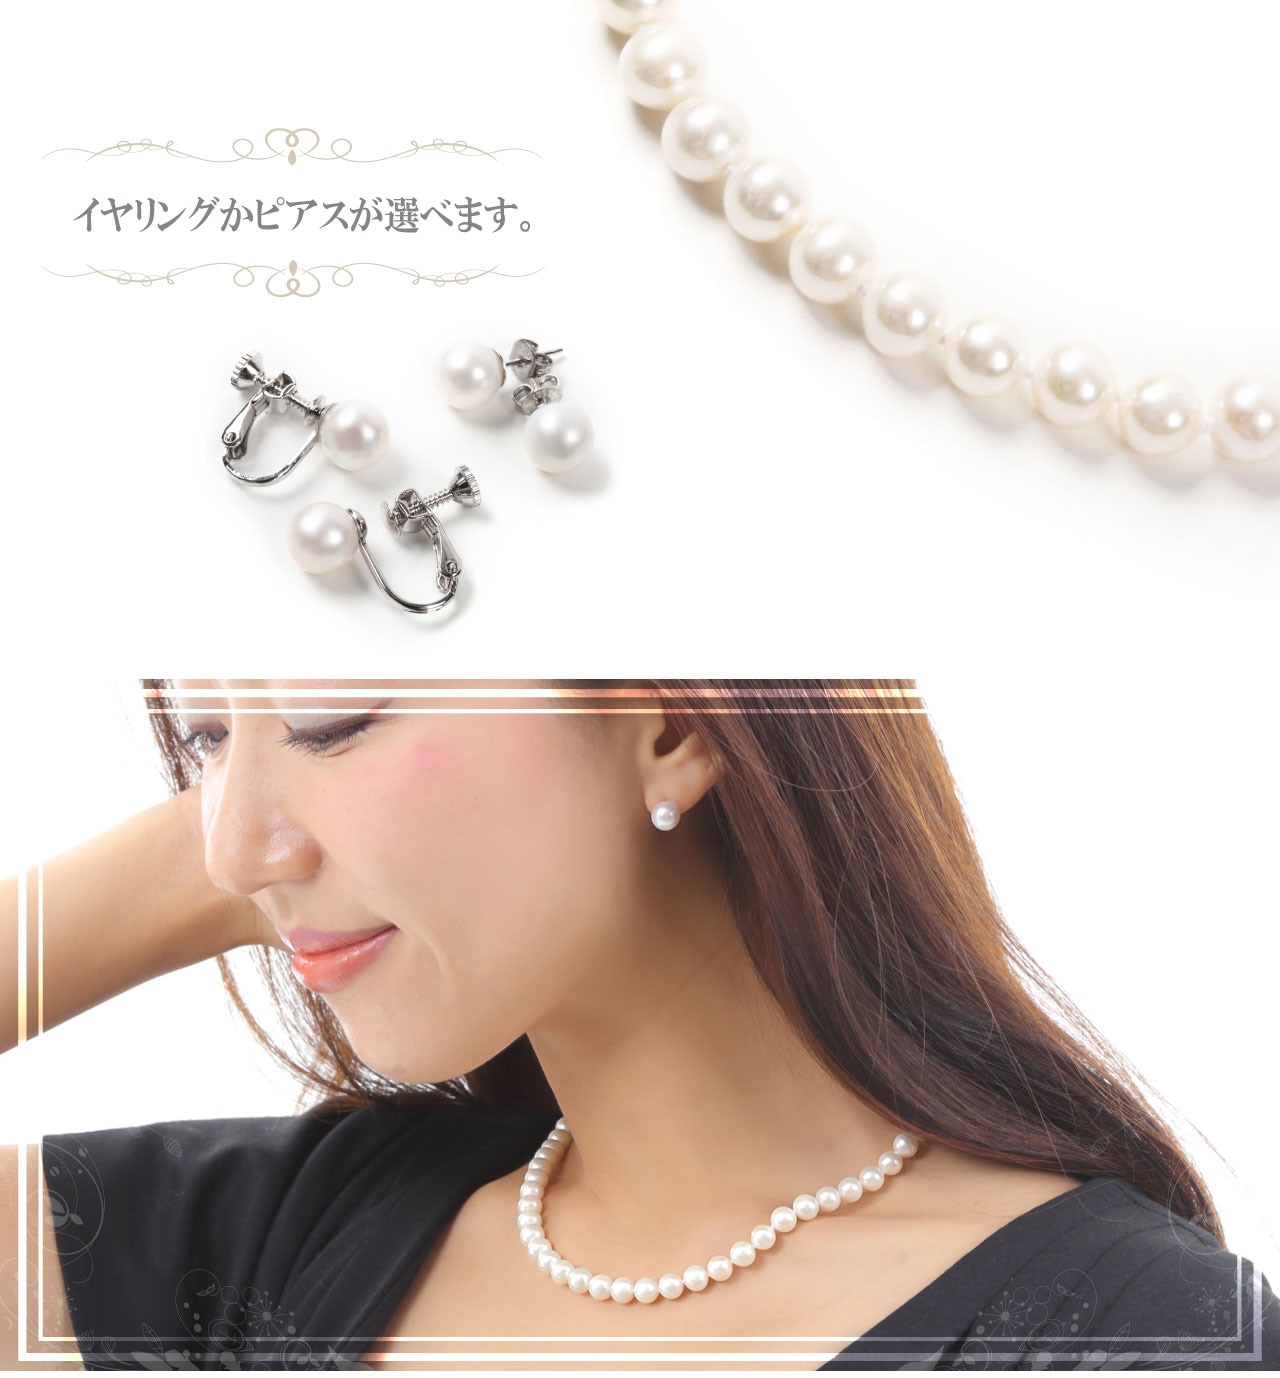 つやたま真珠 パールネックレス 真珠ネックレス 無核本真珠 7.0-7.5mm